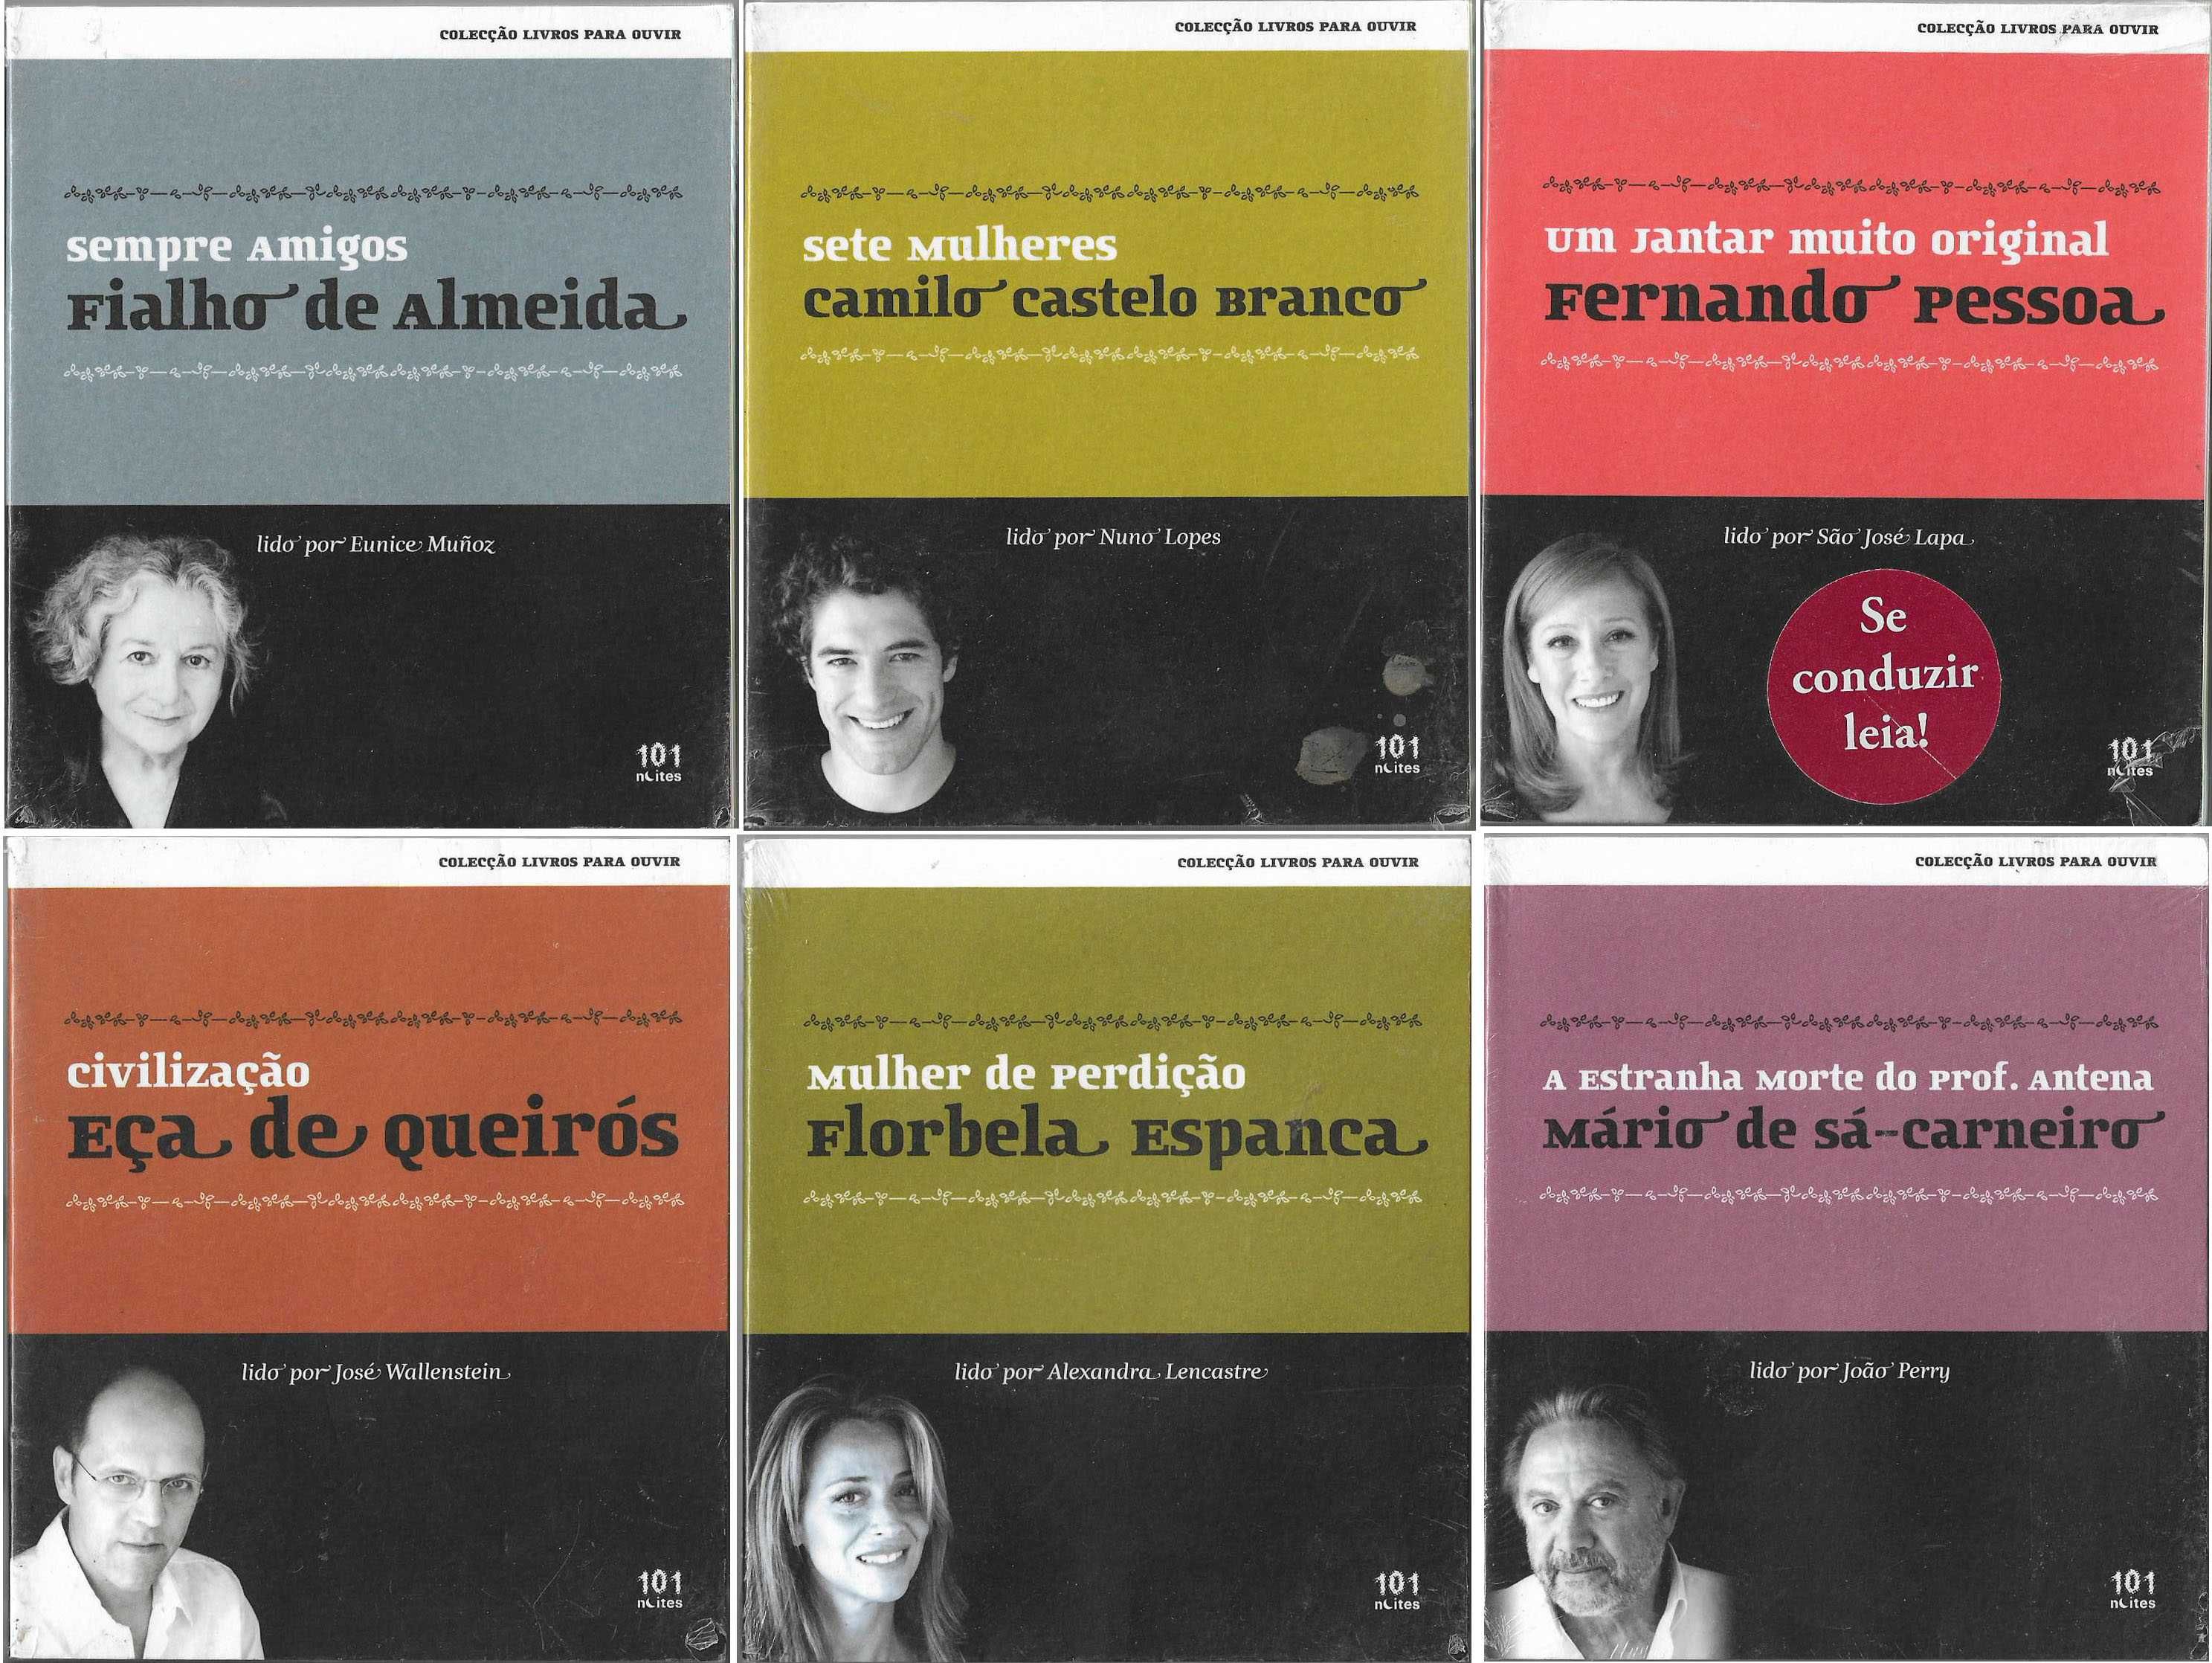 Discos CDS Audio Livros Villaret Aleixo Pessoa Espanca Eça De Quieirós